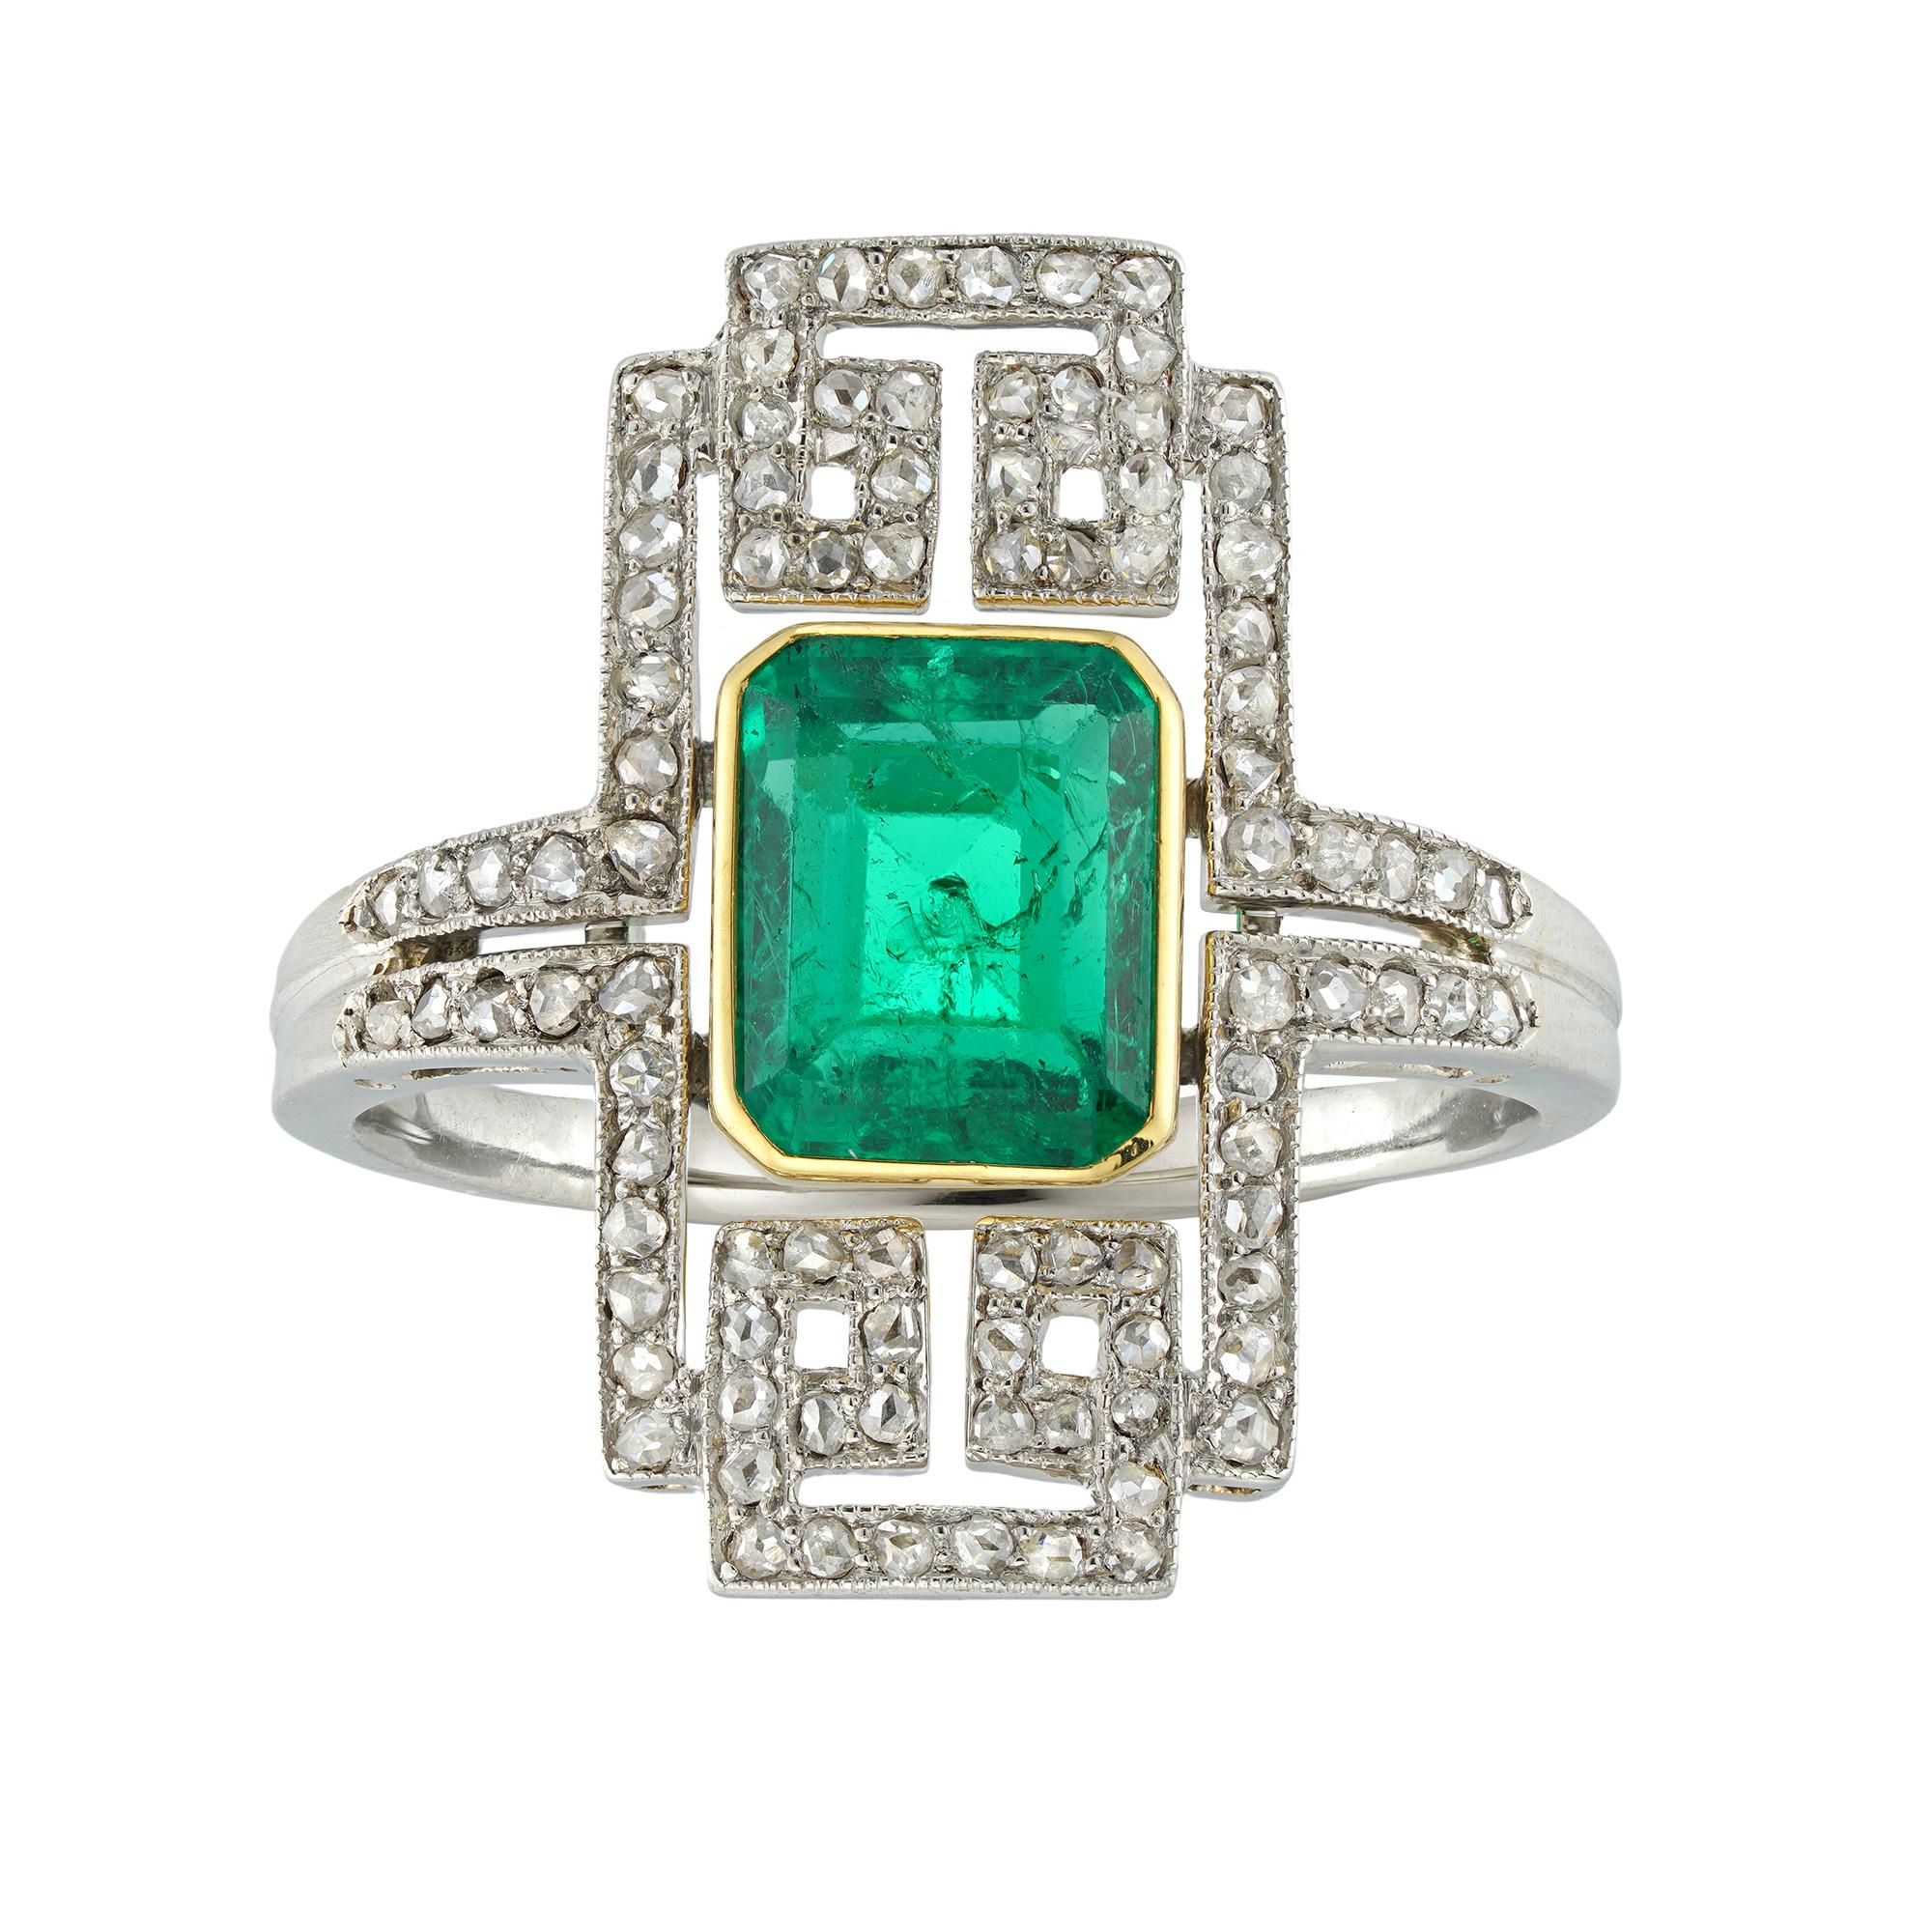 Ein Art-Deco-Ring mit Smaragd und Diamanten, Janesich zugeschrieben, der Smaragd im Smaragdschliff hat ein geschätztes Gewicht von 1,8 Karat, begleitet von einem GCS-Laborbericht, der besagt, dass er kolumbianischen Ursprungs ist, mit geringfügigen